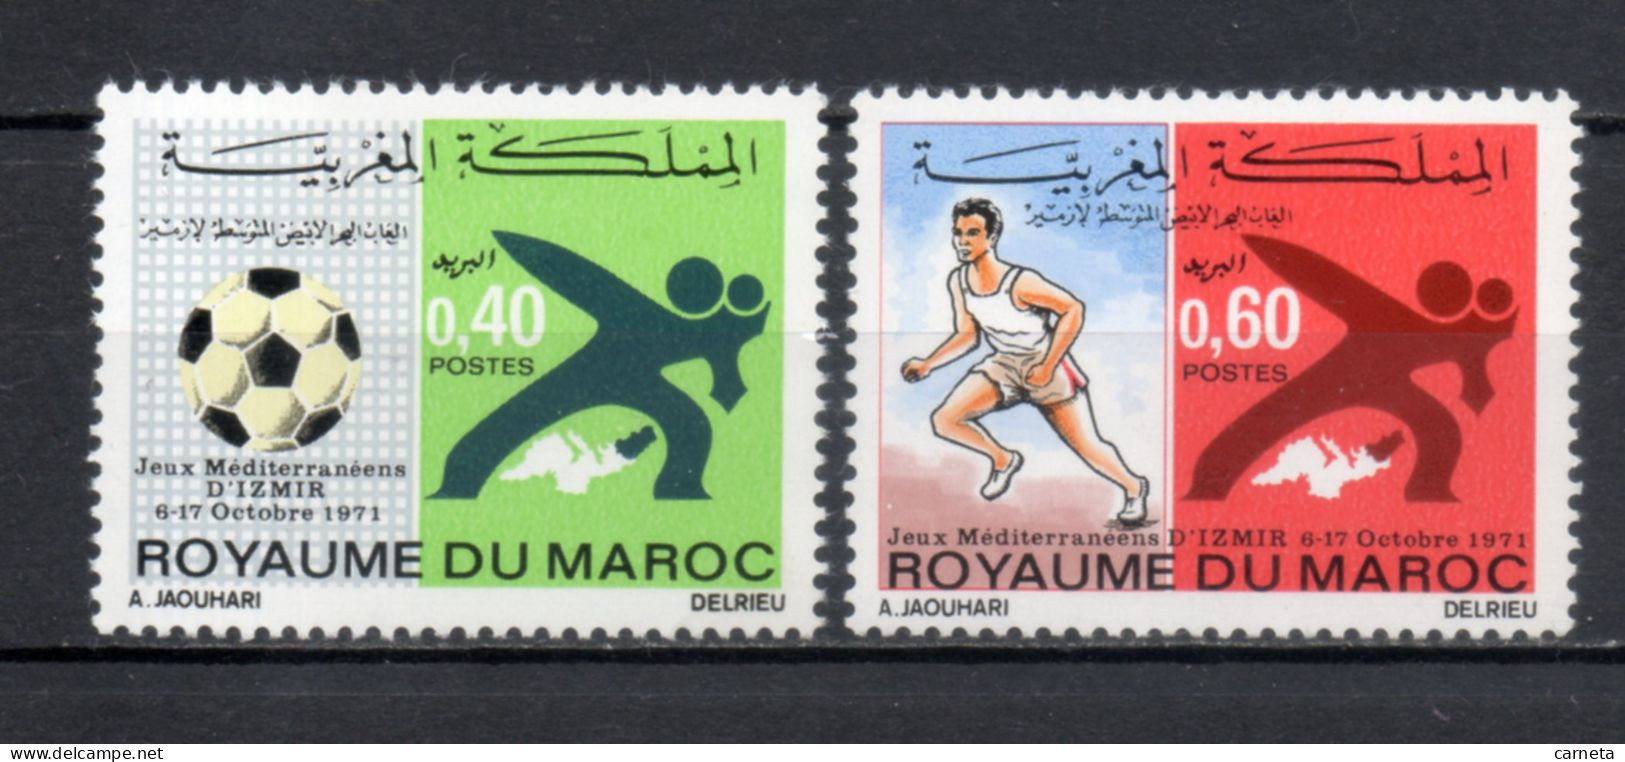 MAROC N°  625 + 626    NEUFS SANS CHARNIERE  COTE 2.00€  FOOTBALL JEUX SPORT - Maroc (1956-...)